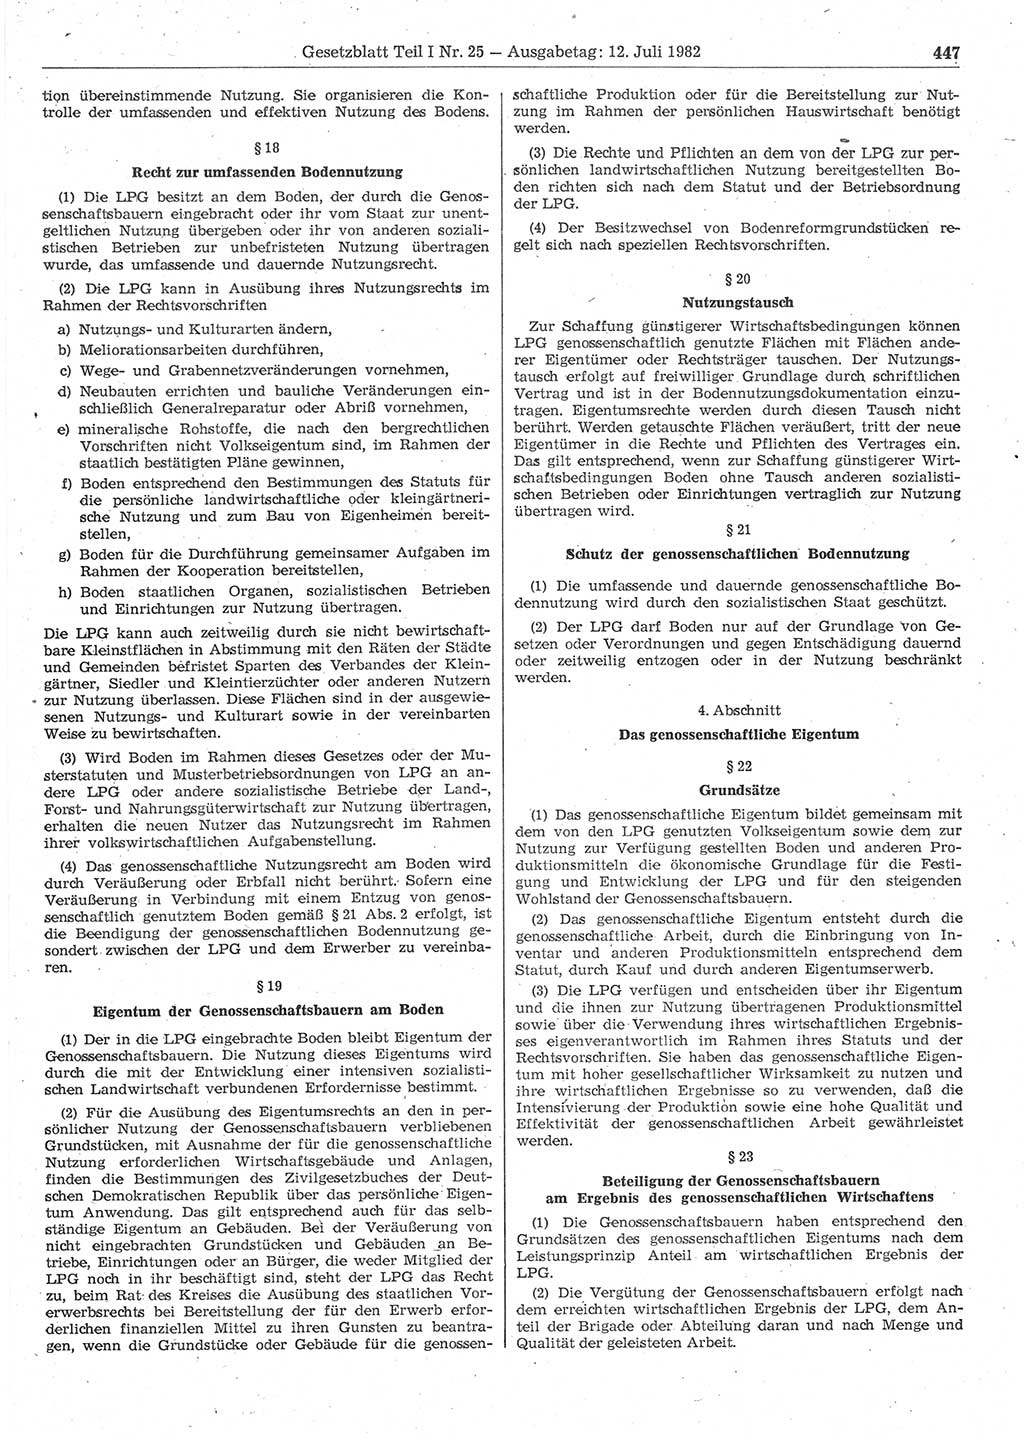 Gesetzblatt (GBl.) der Deutschen Demokratischen Republik (DDR) Teil Ⅰ 1982, Seite 447 (GBl. DDR Ⅰ 1982, S. 447)